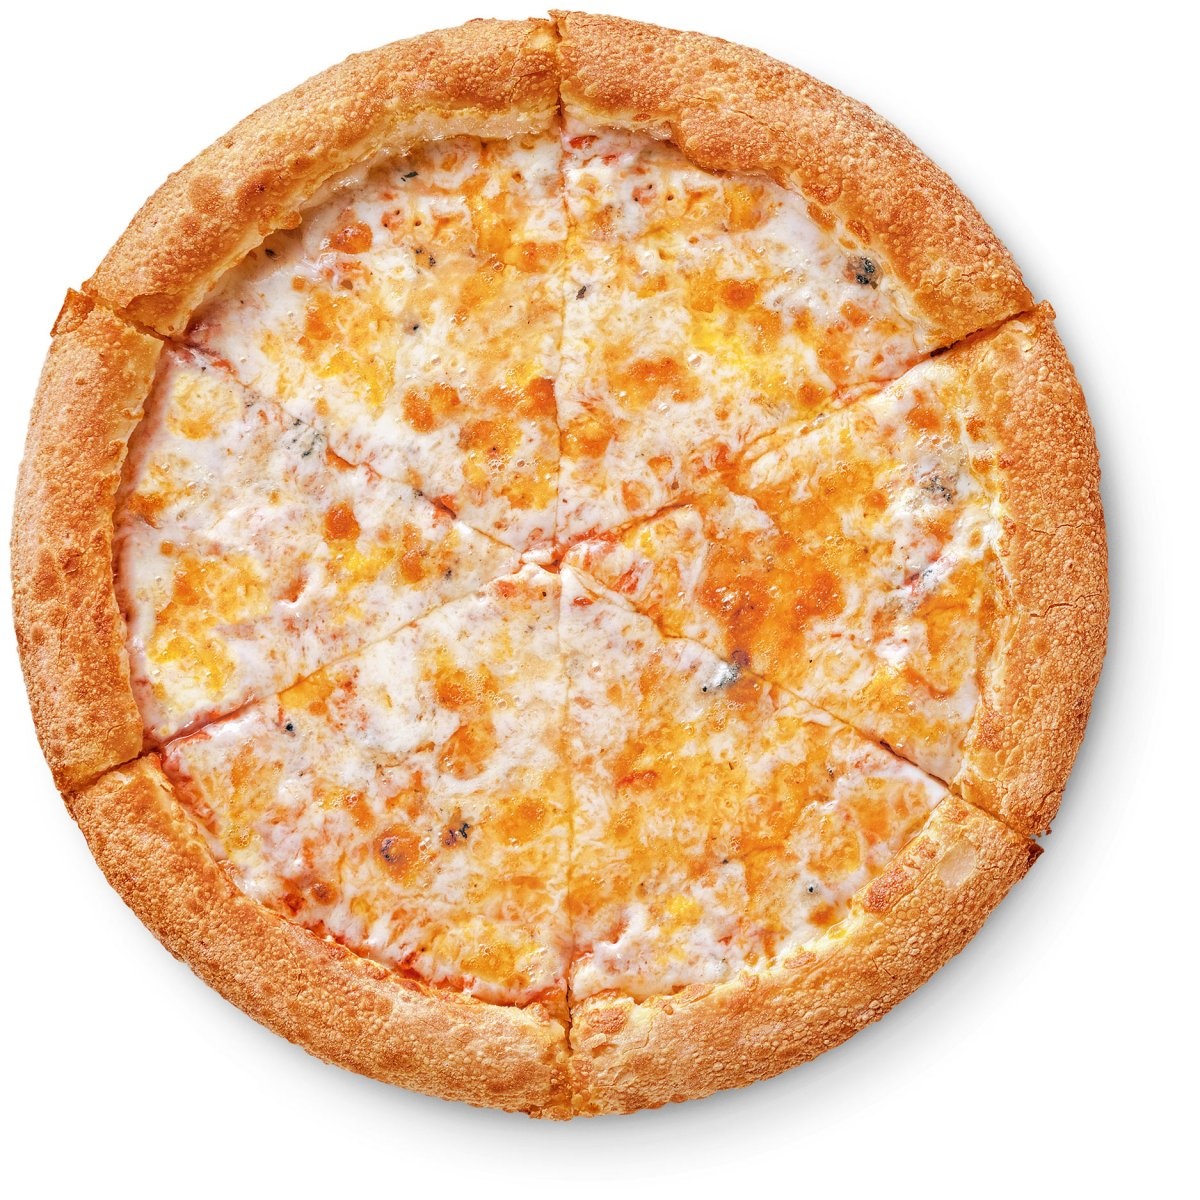 додо четыре сыра отзывы пицца фото 4